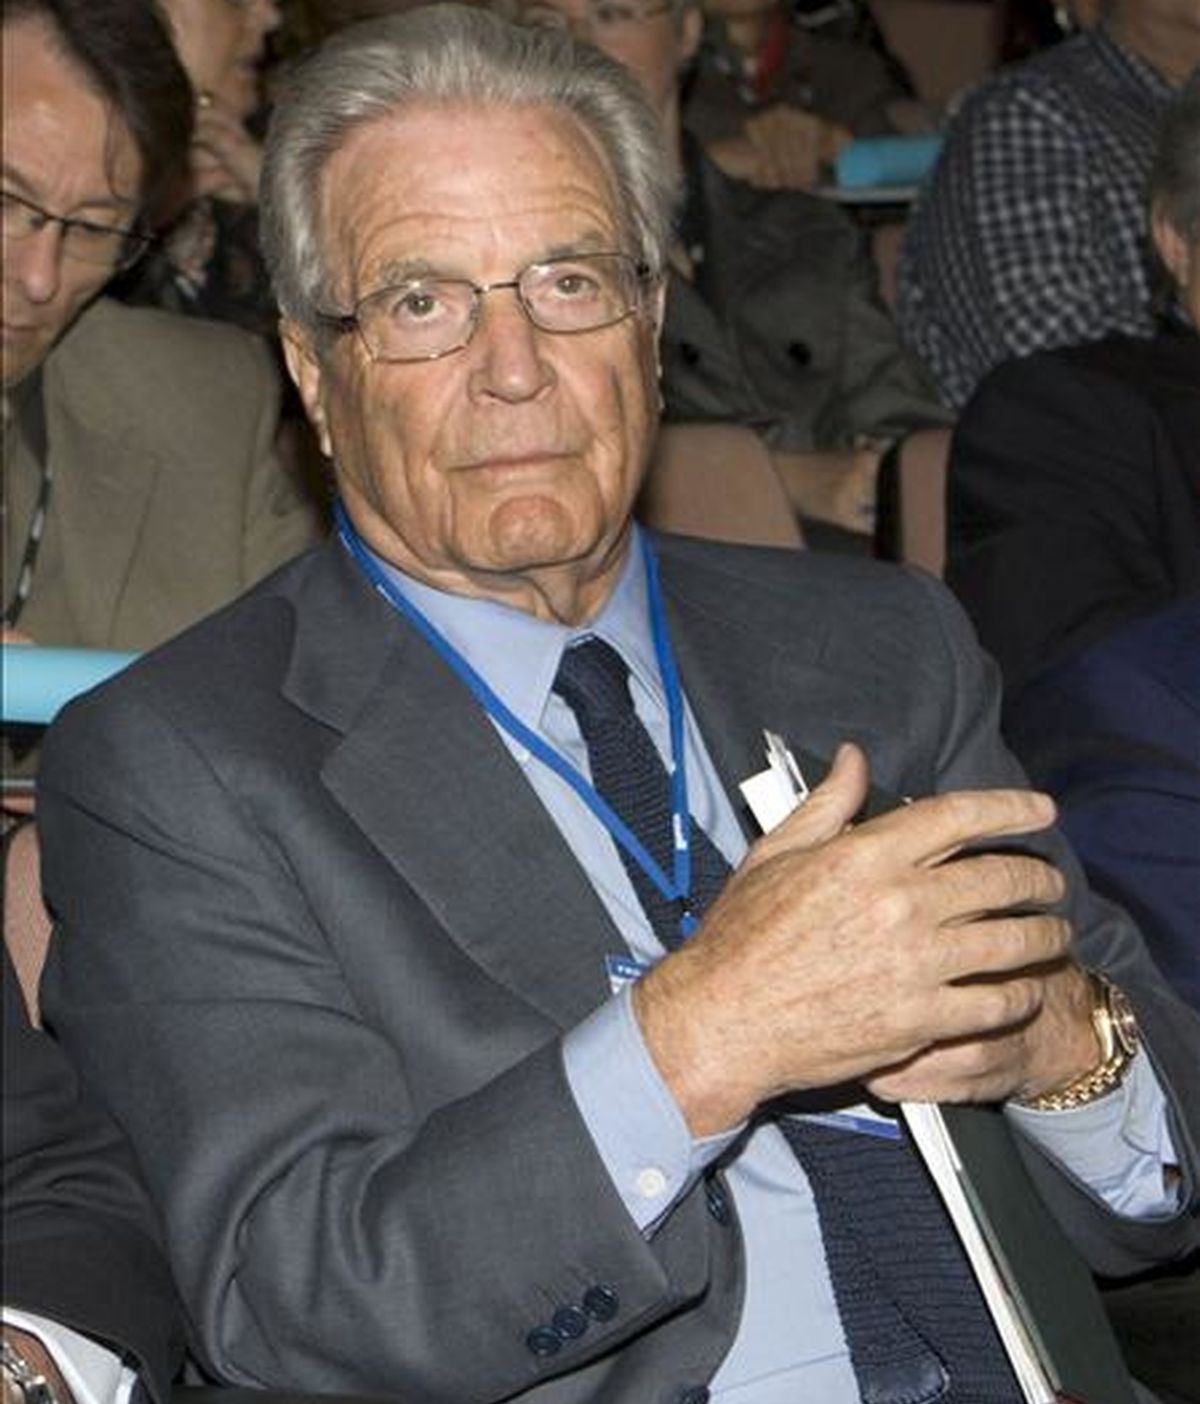 El jurista Antonio Garrigues Walker, en la inauguración del X Foro Internacional de Logística PILOT, en Zaragoza, en abril pasado. EFE/Archivo